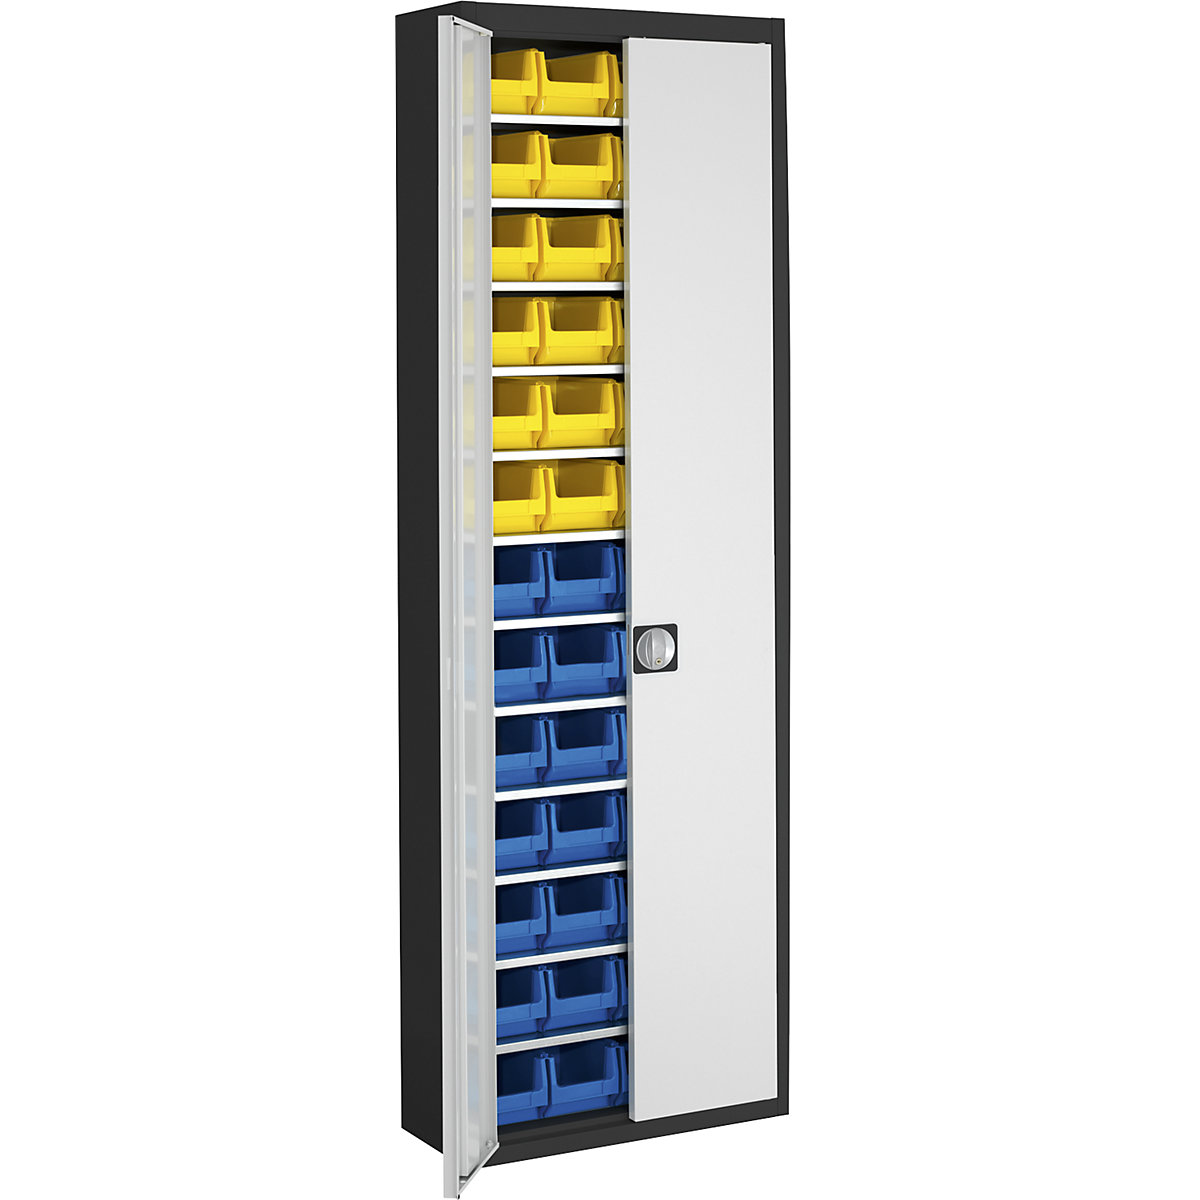 Skladišni ormar s otvorenim skladišnim kutijama – mauser, VxŠxD 2150 x 680 x 280 mm, u dvije boje, korpus u crnoj boji, vrata u sivoj boji, 52 kutije-15